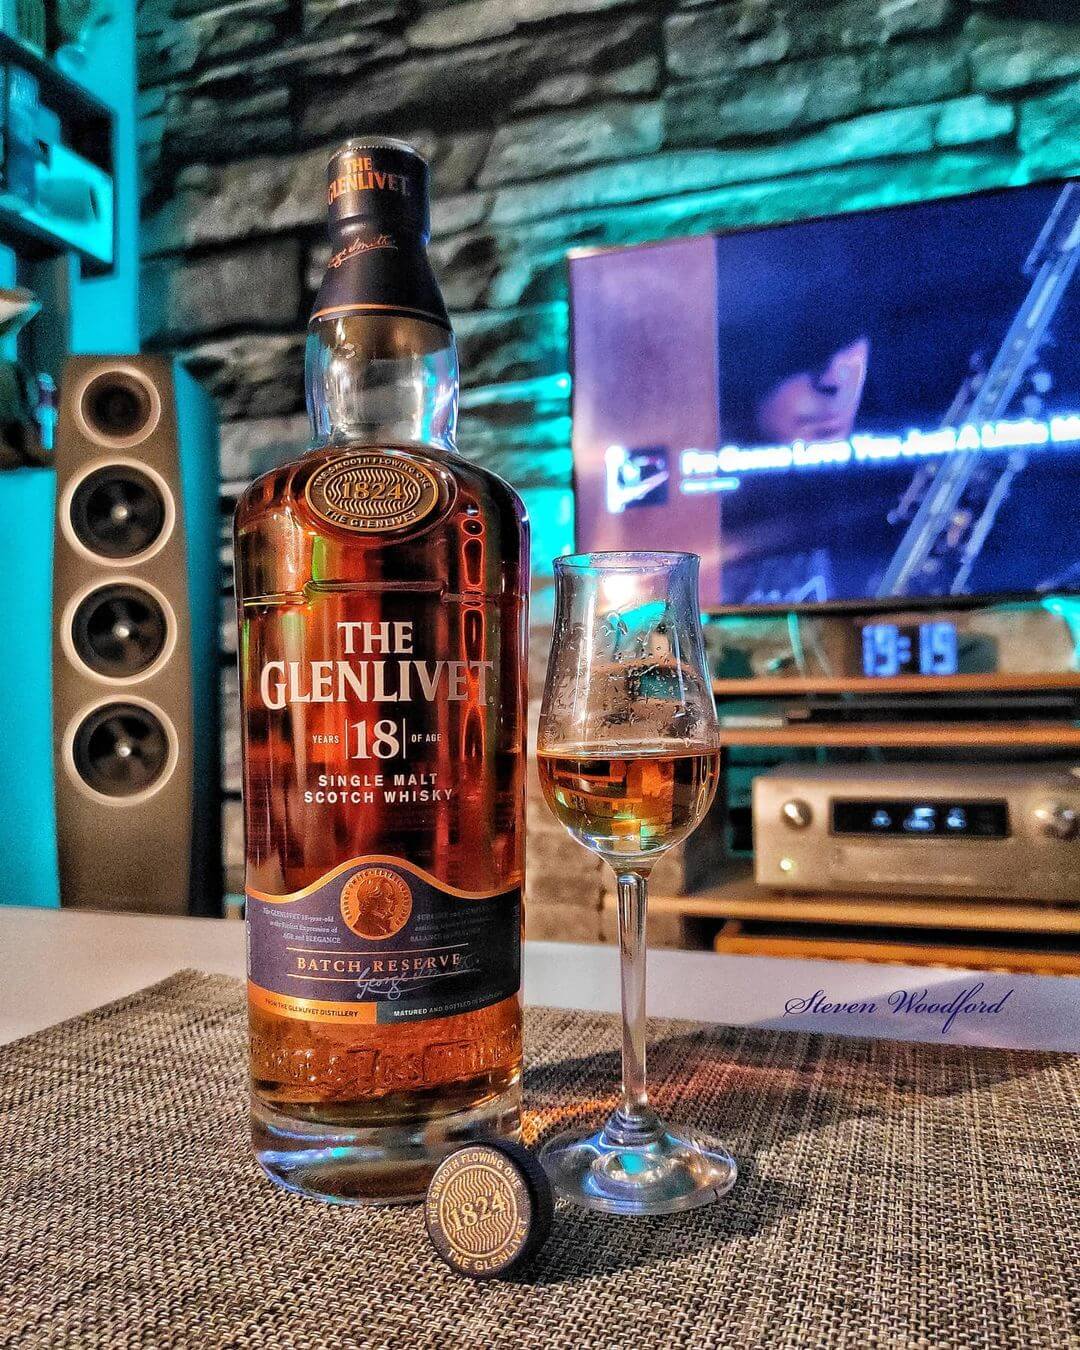 The Glenlivet 18 Single Malt Scotch Whisky